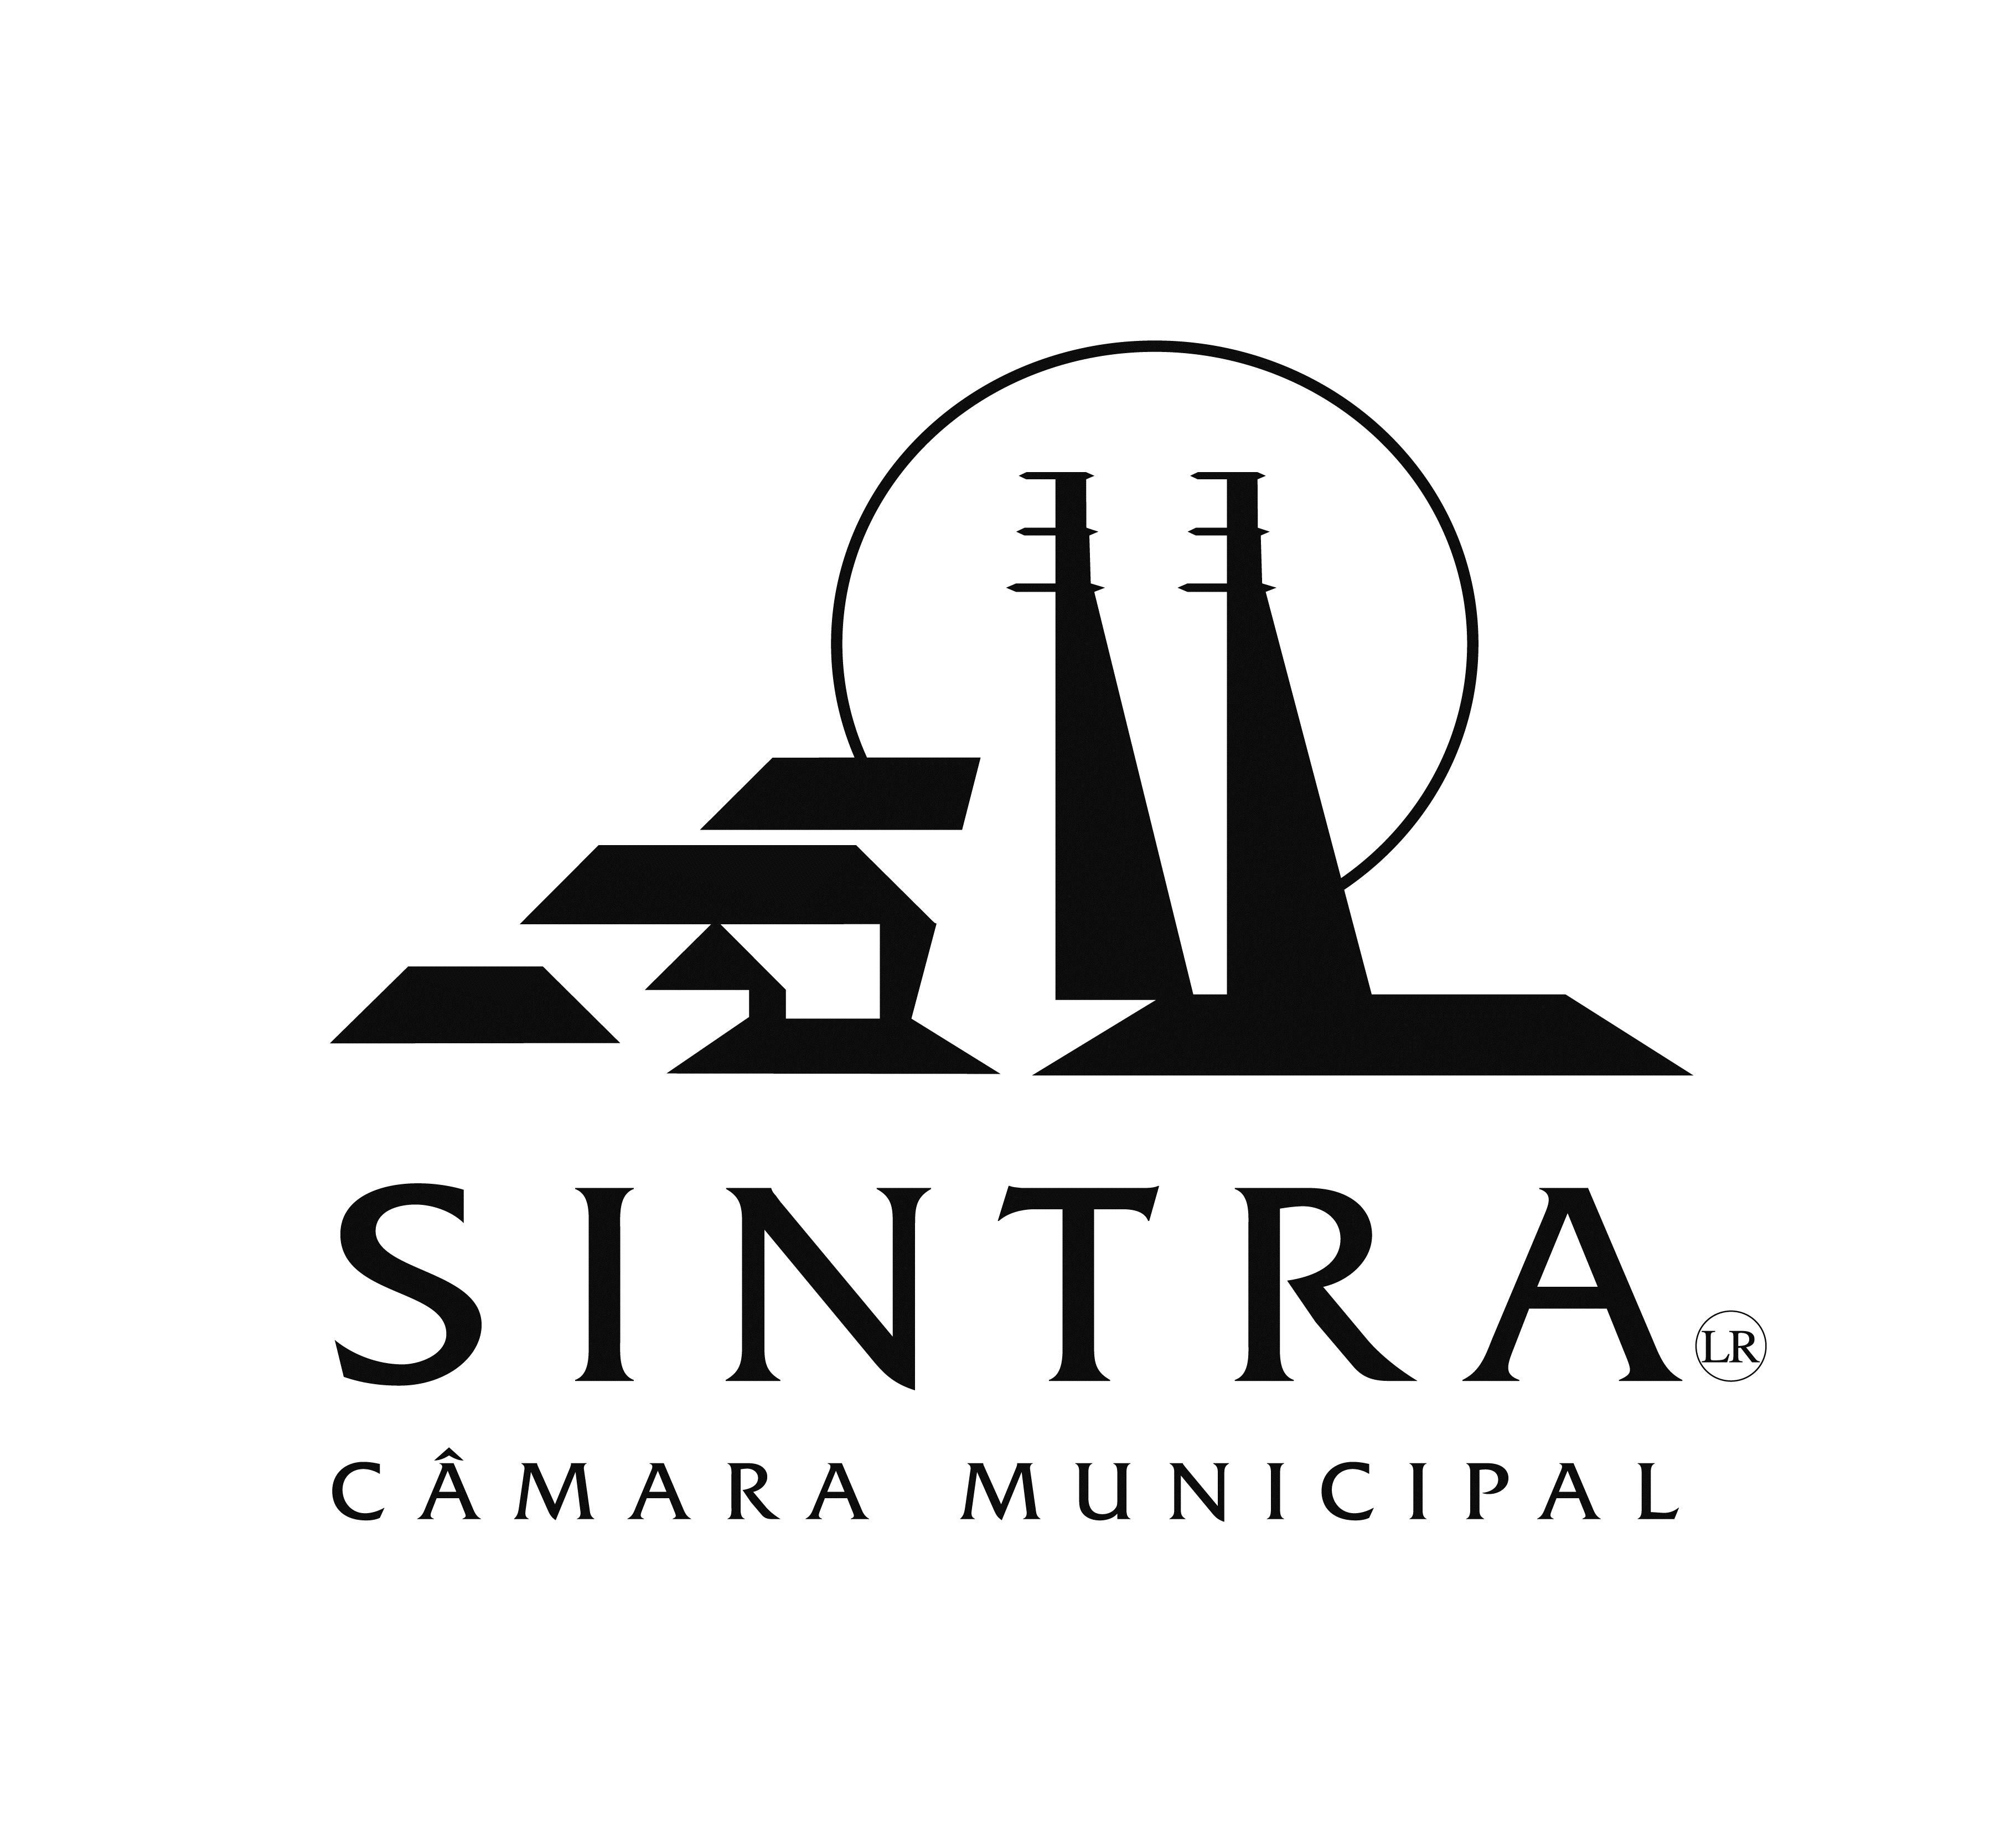 Câmara Municipal de Sintra